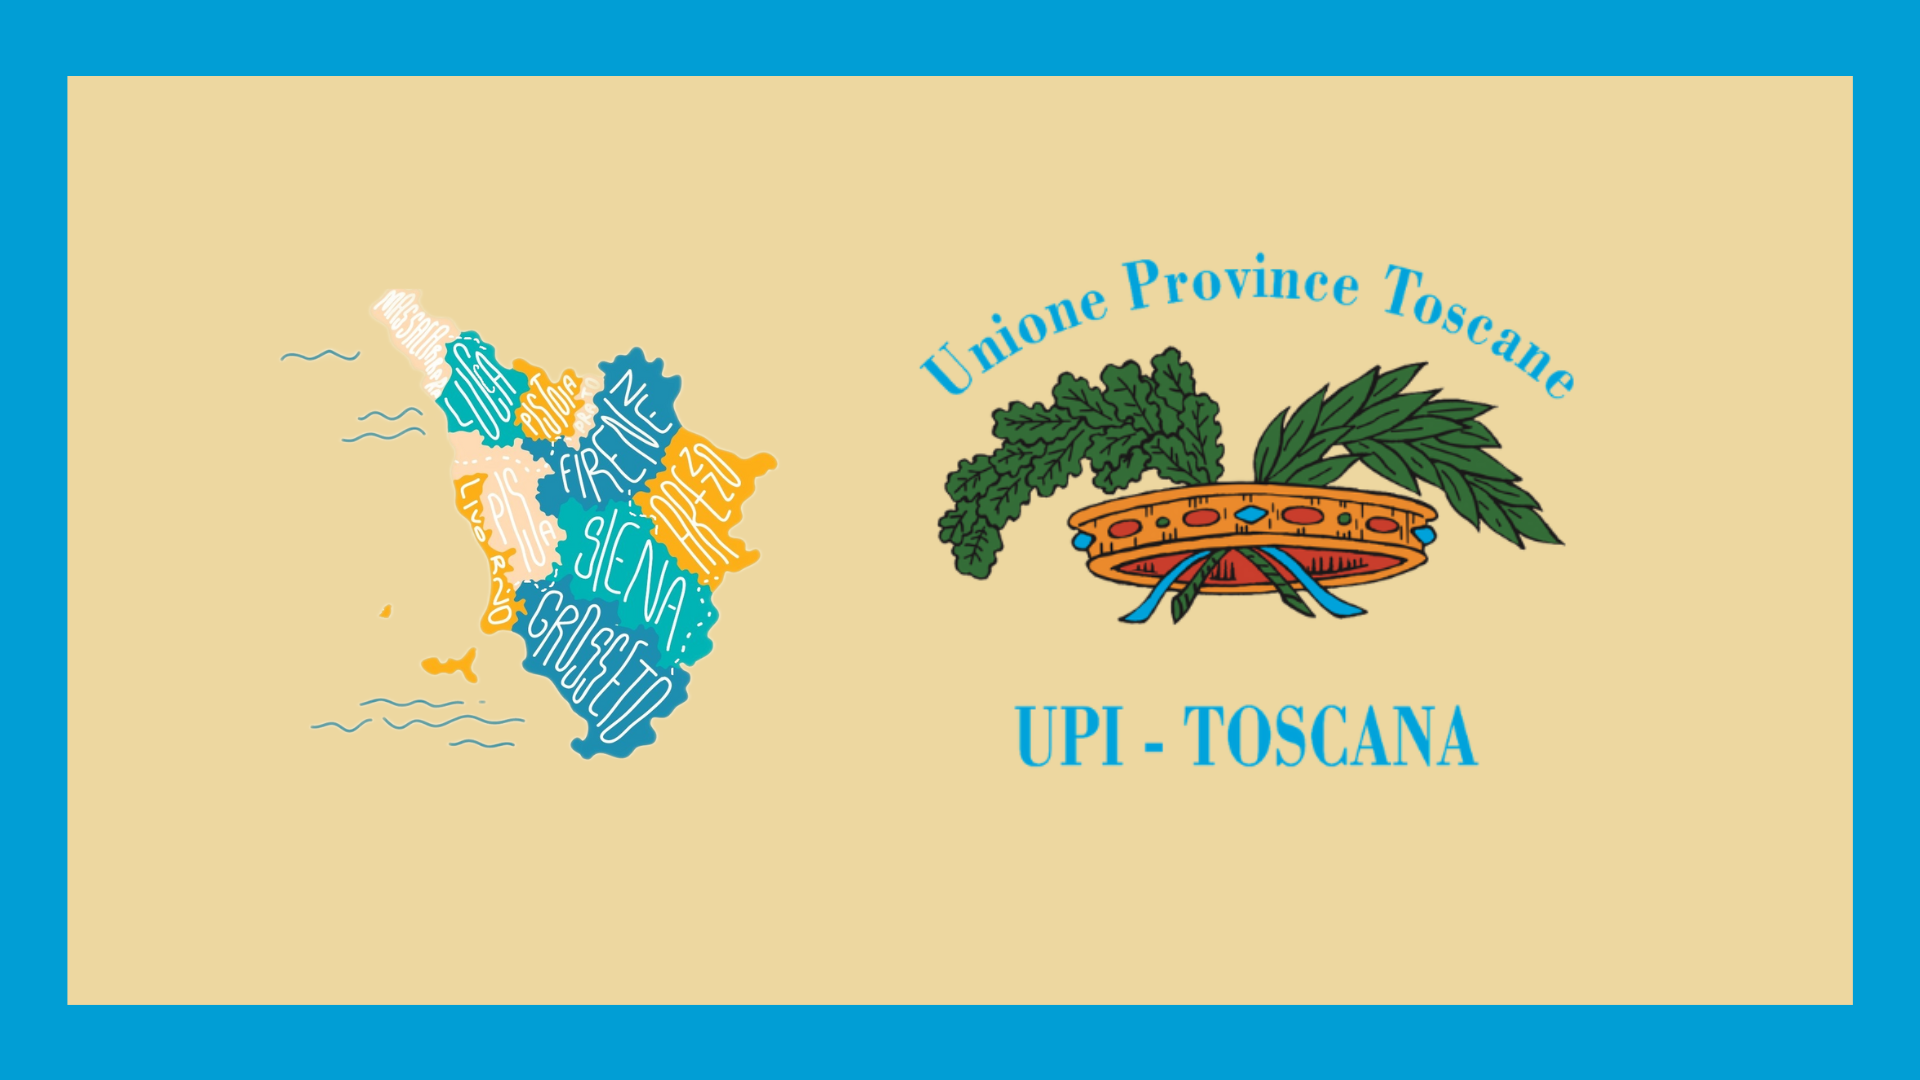 Convocato il Consiglio Direttivo di UPI Toscana l’11 settembre